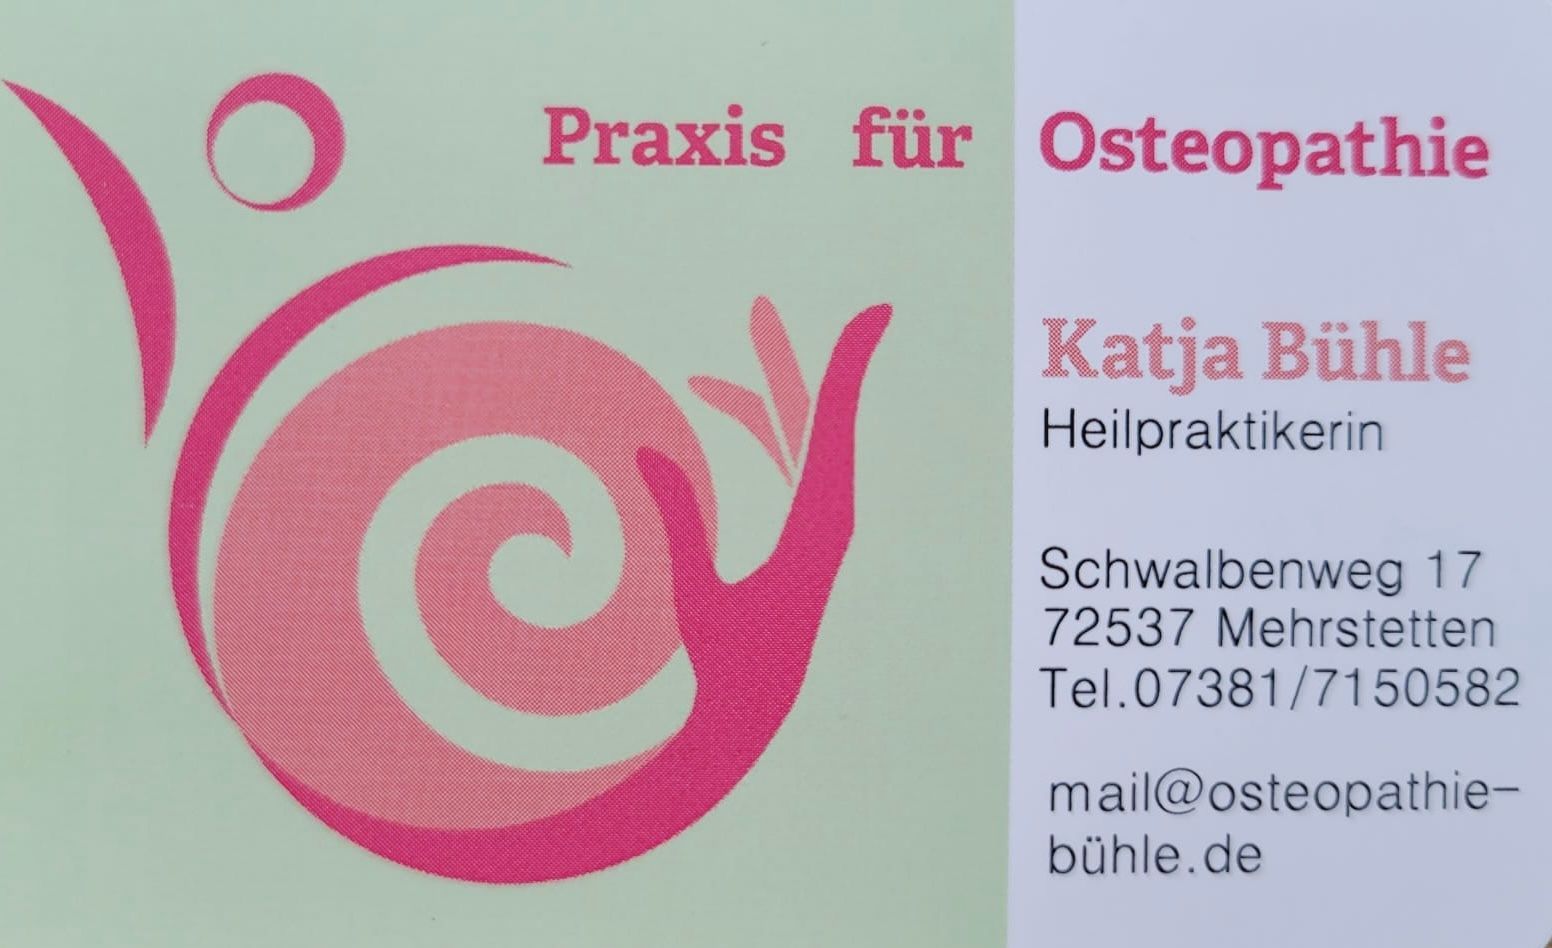 Praxis für Osteopathie - Katja Bühle